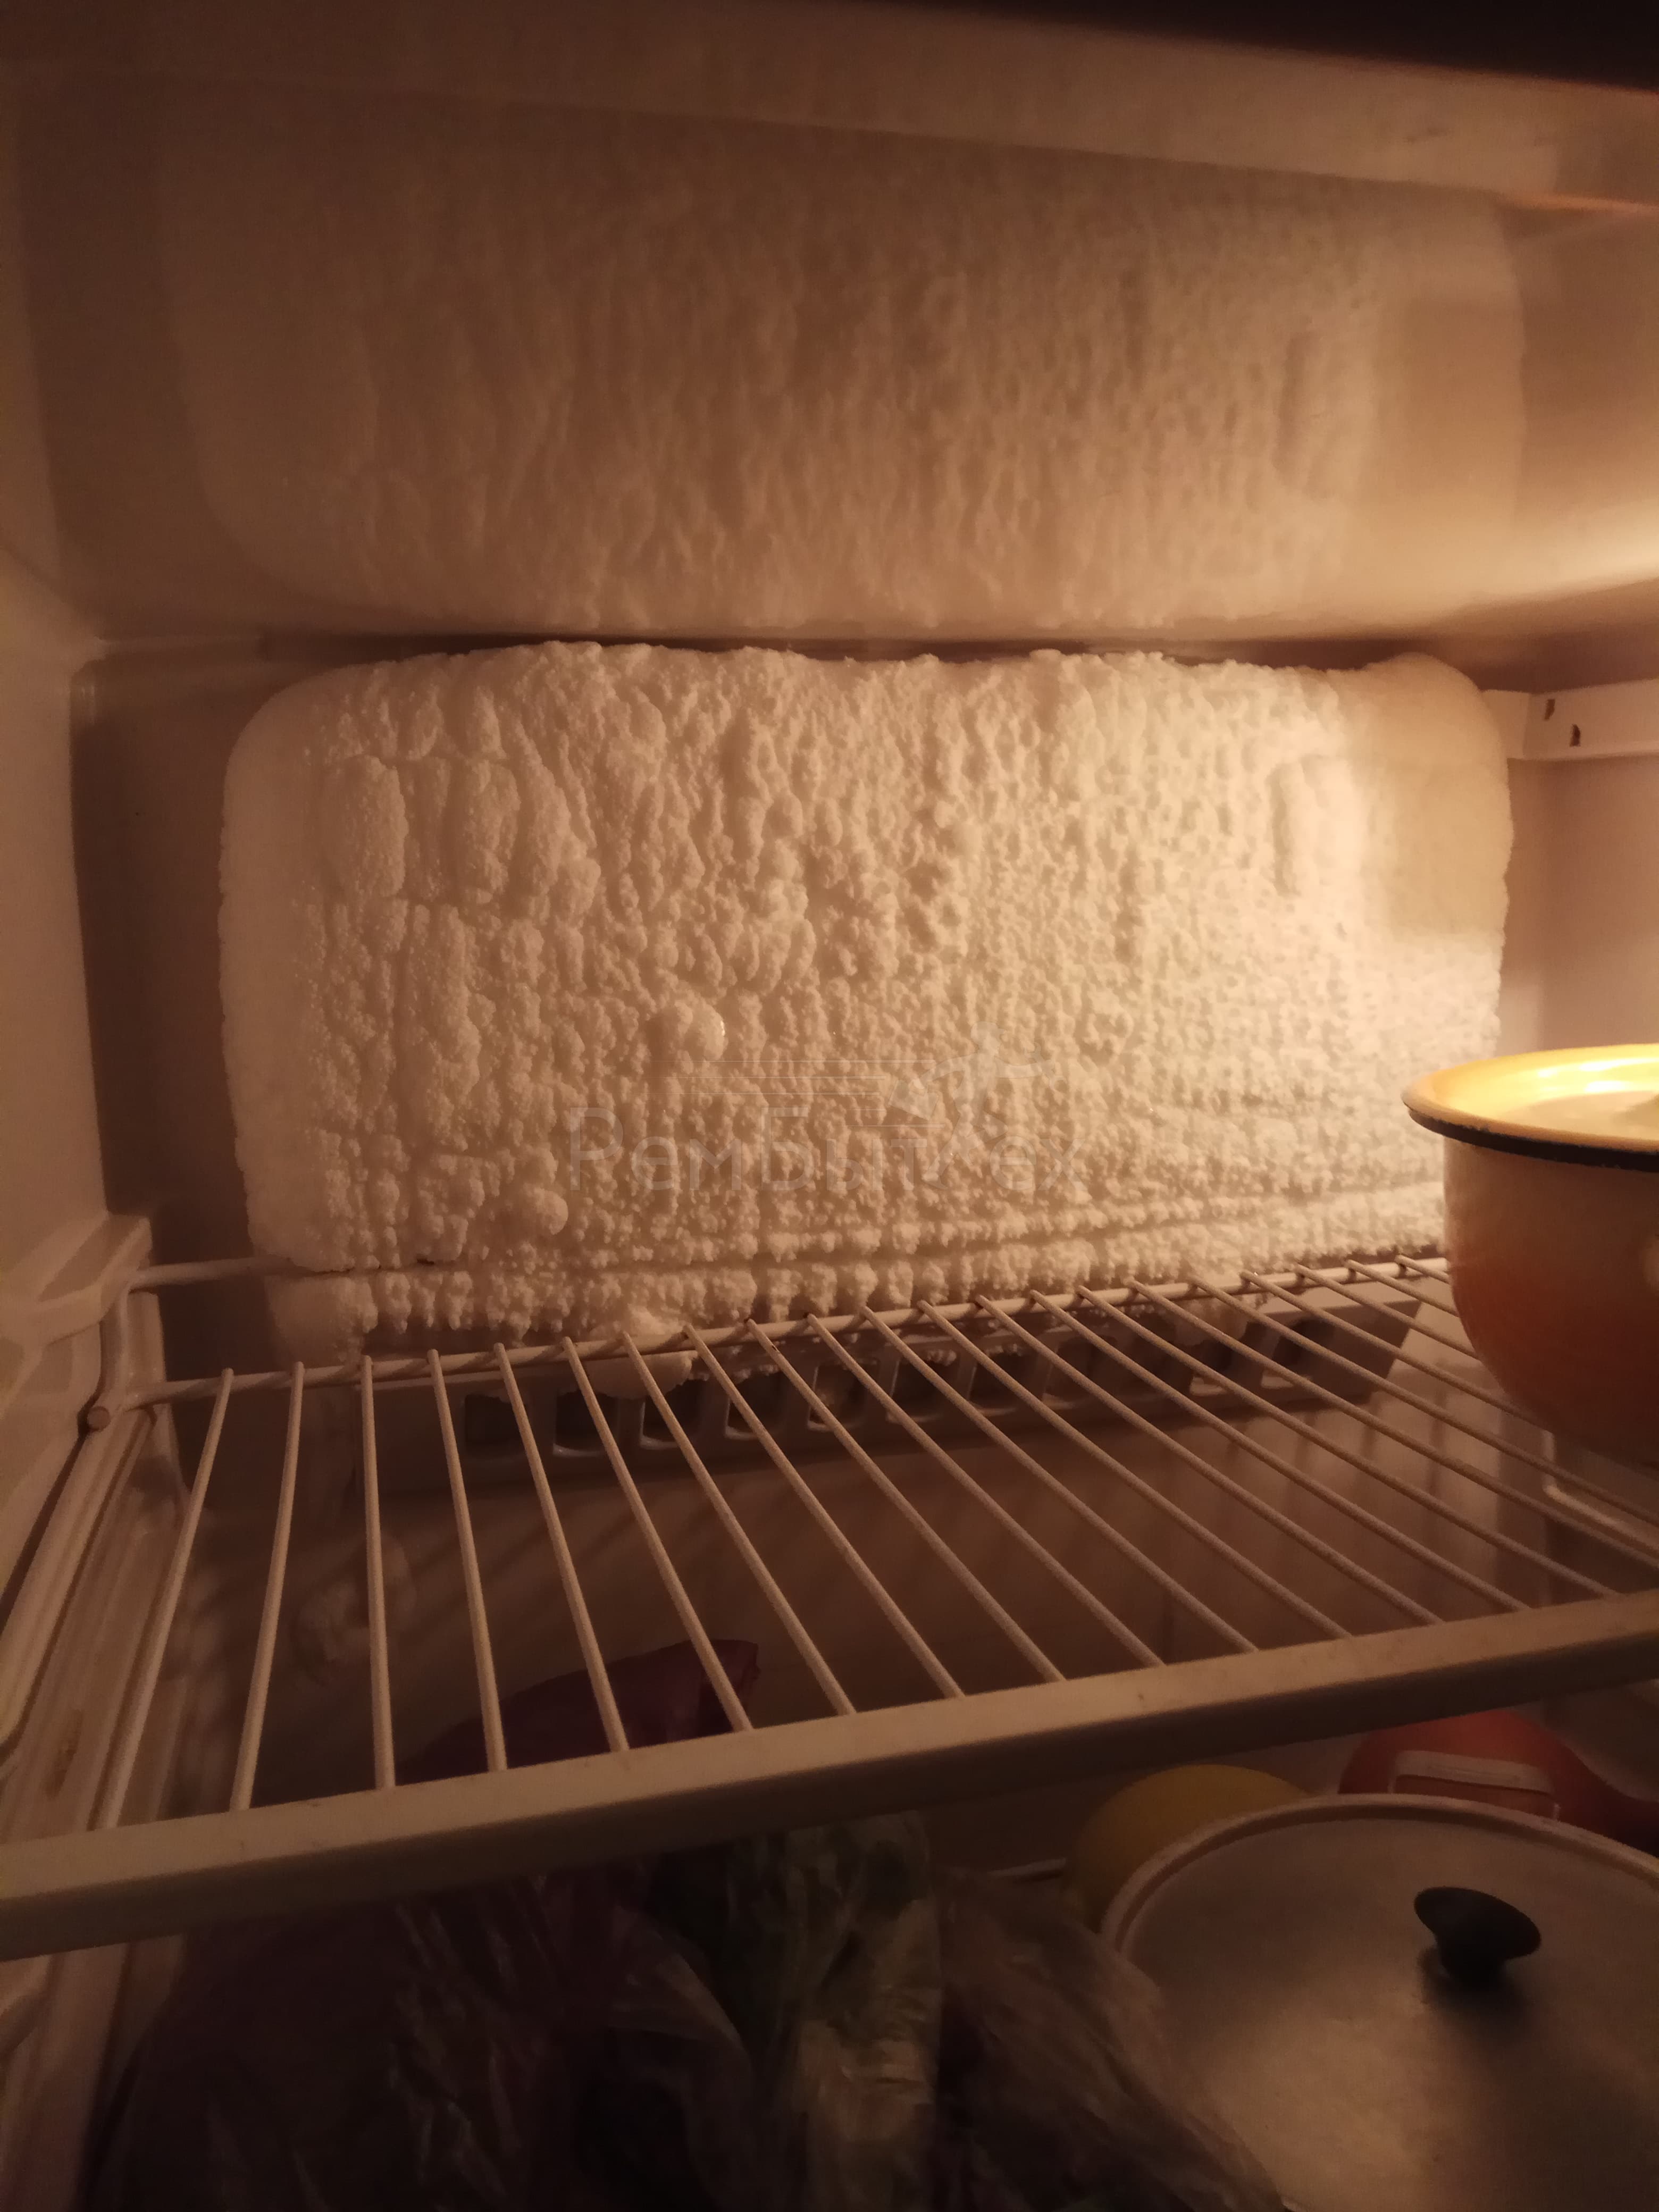 Почему в холодильнике намерзает снег. Холодильник Атлант намерзает задняя стенка холодильника. Эадняя стенка холод дьника Атланта. Намерзание на стенках холодильника. Задняя стенка холодильника.